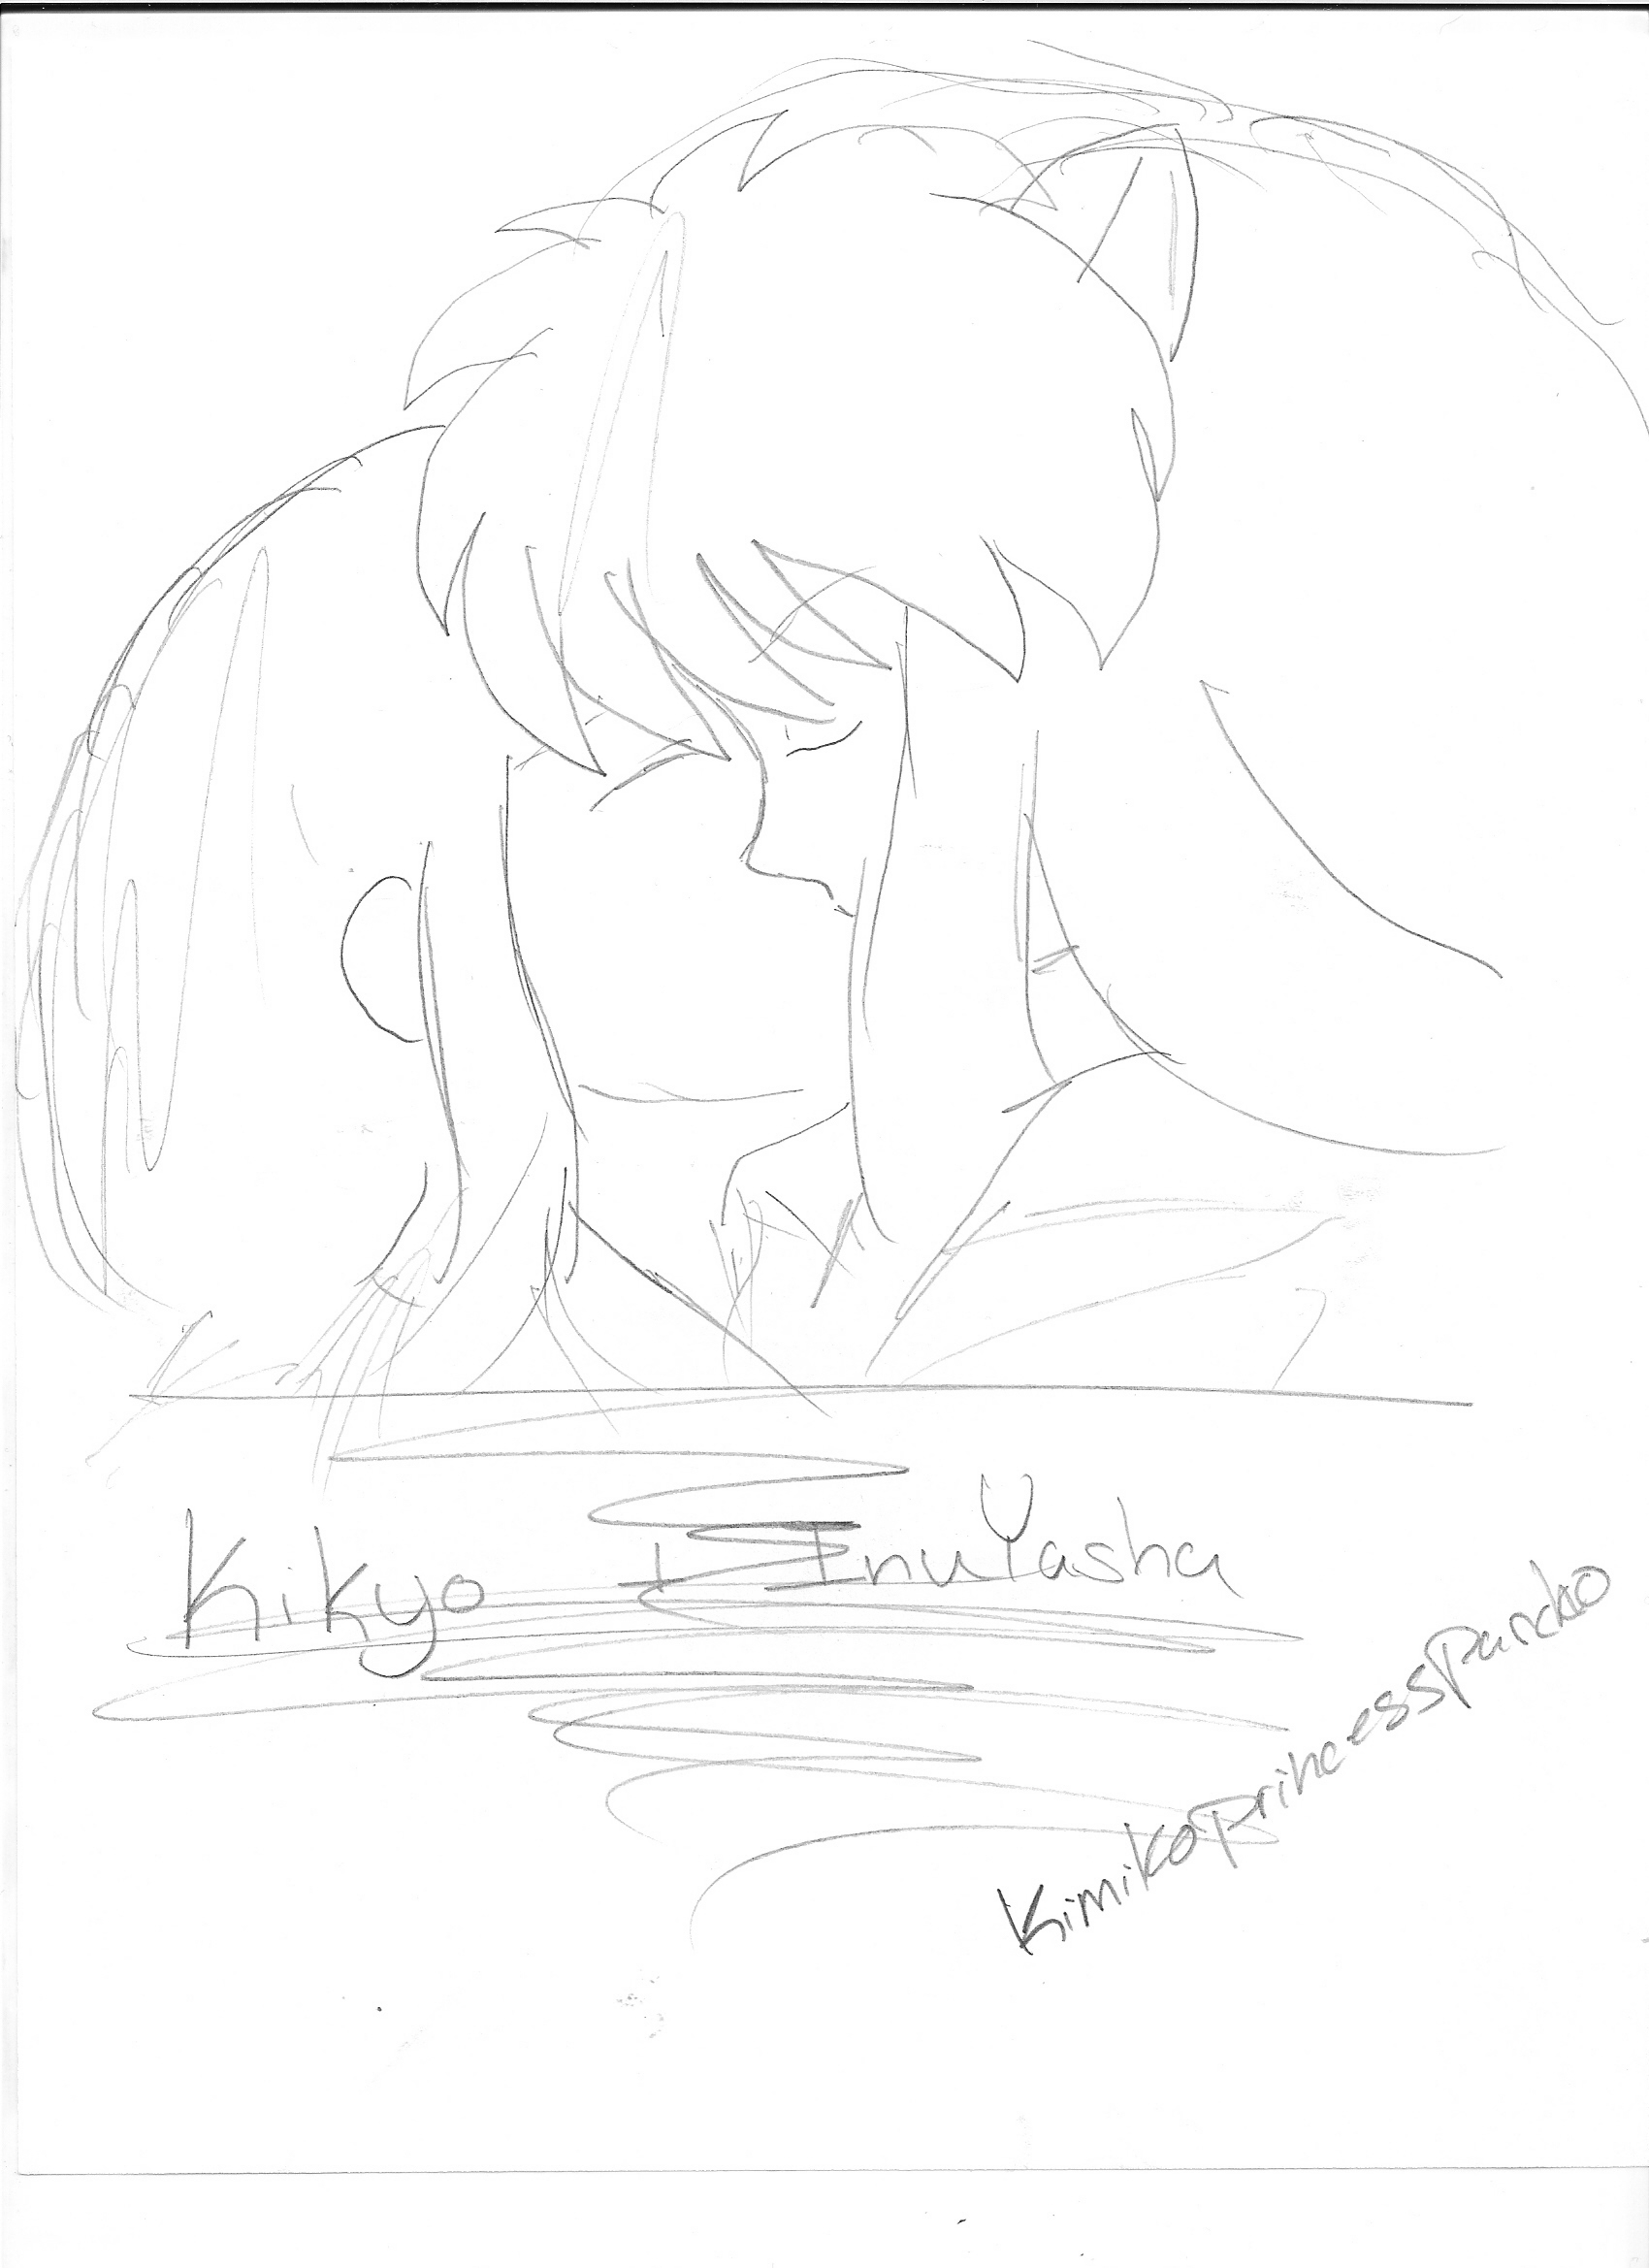 InuYasha and Kikyo by Kimikoprincesspancho